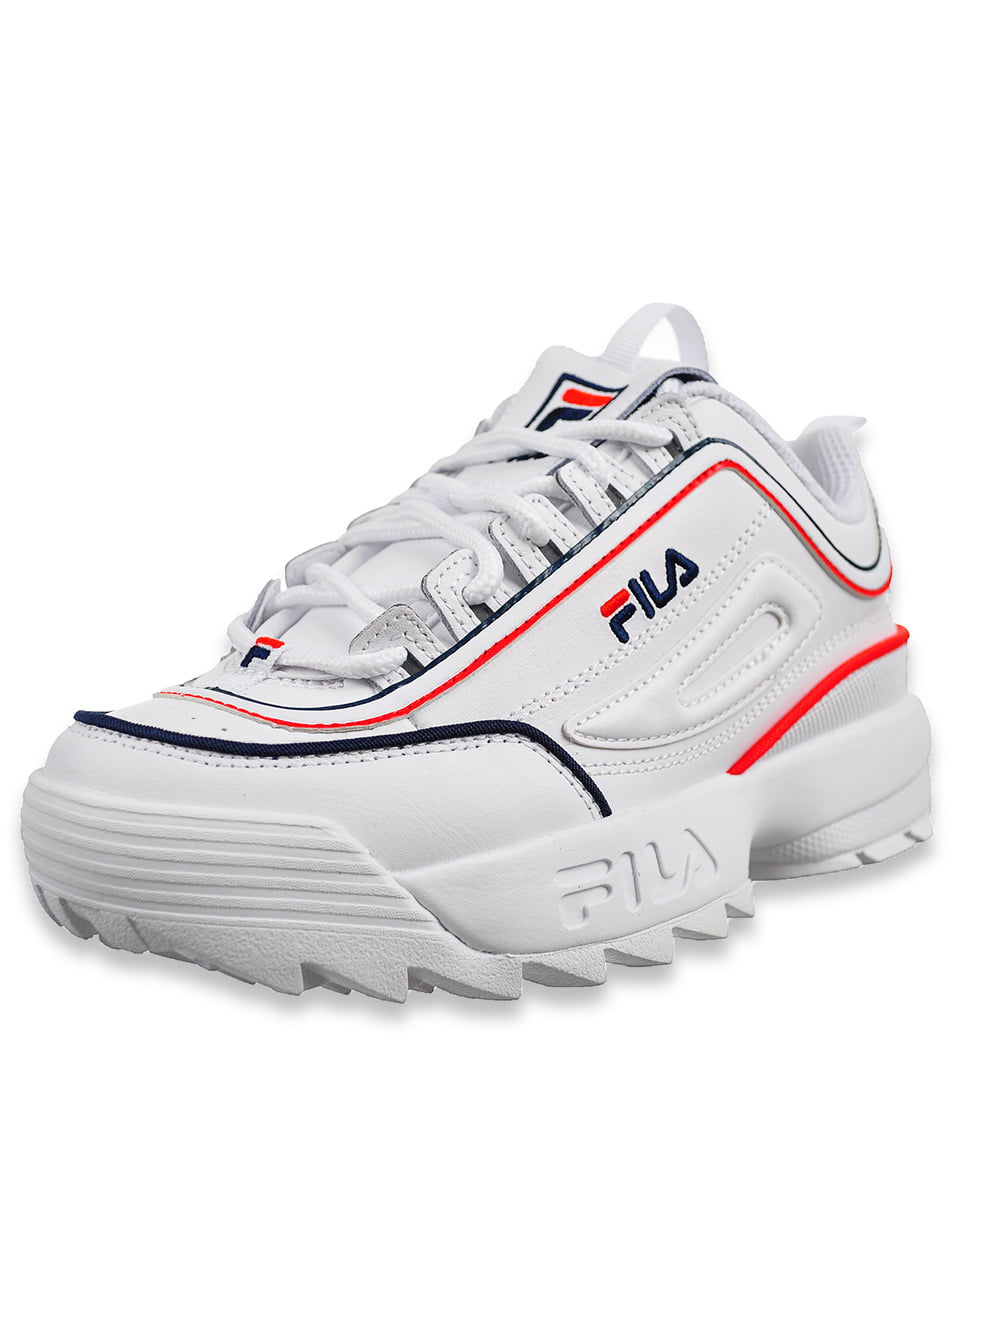 fila sneakers size 3